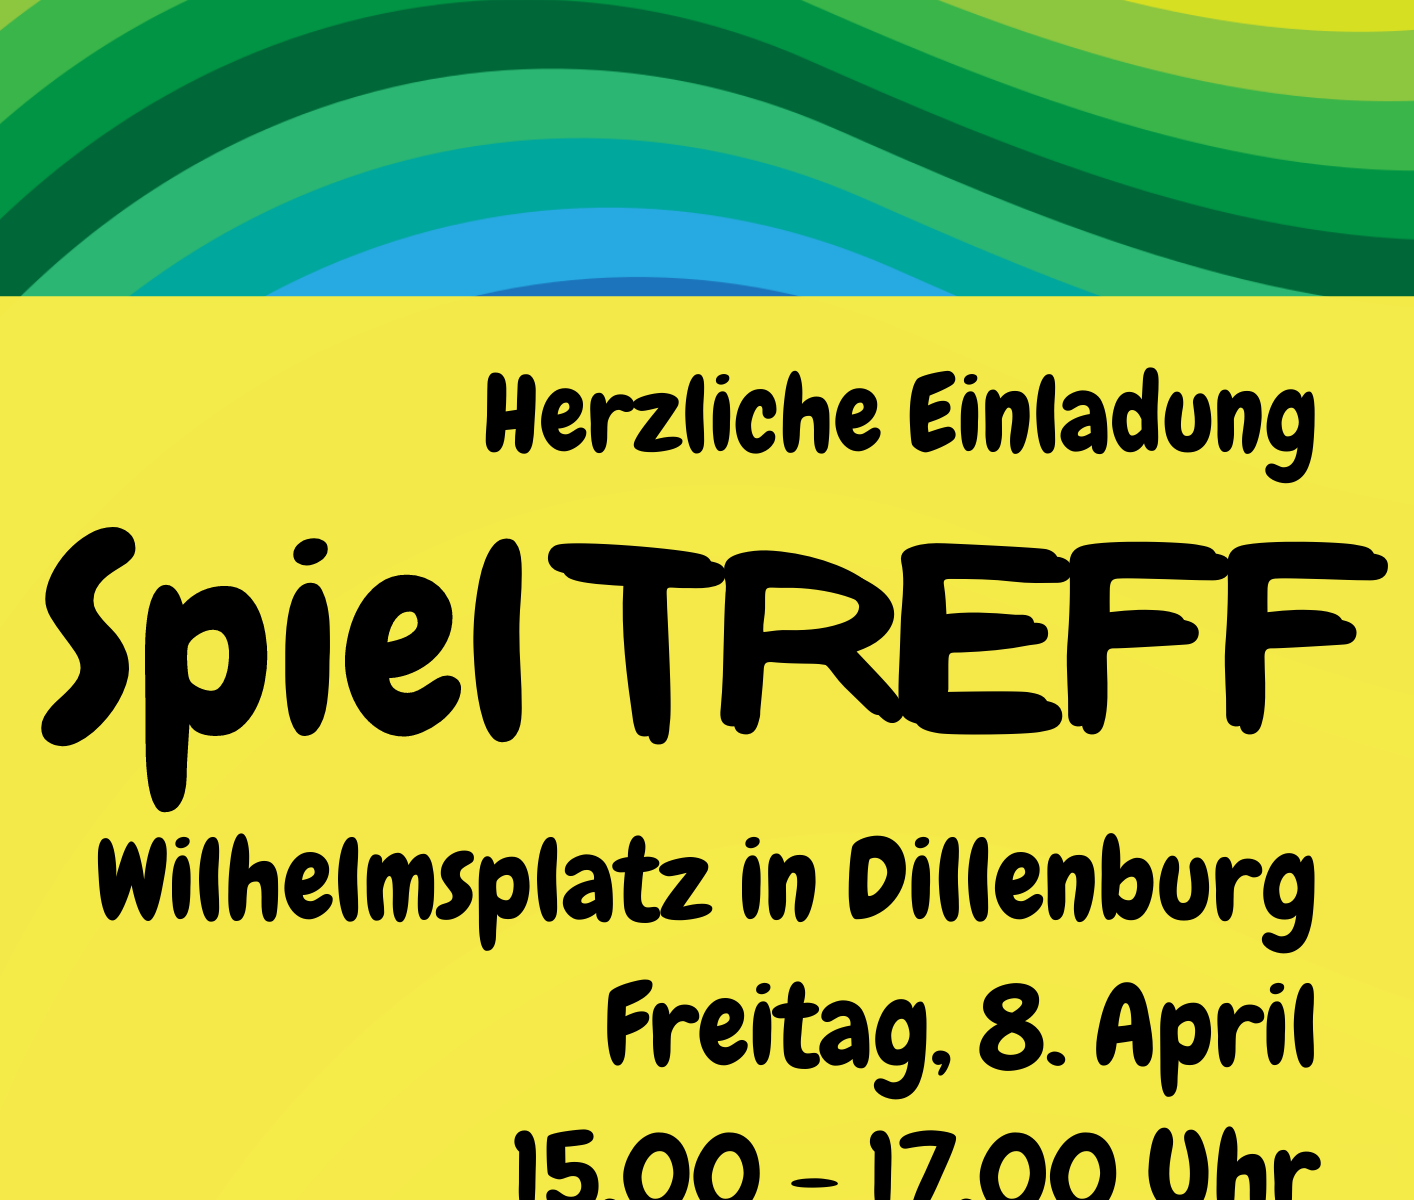 Plakat zum SpielTREFF am 08. April 2022 von 15.00 - 17.00 Uhr auf dem Wilhelmsplatz Dillenburg